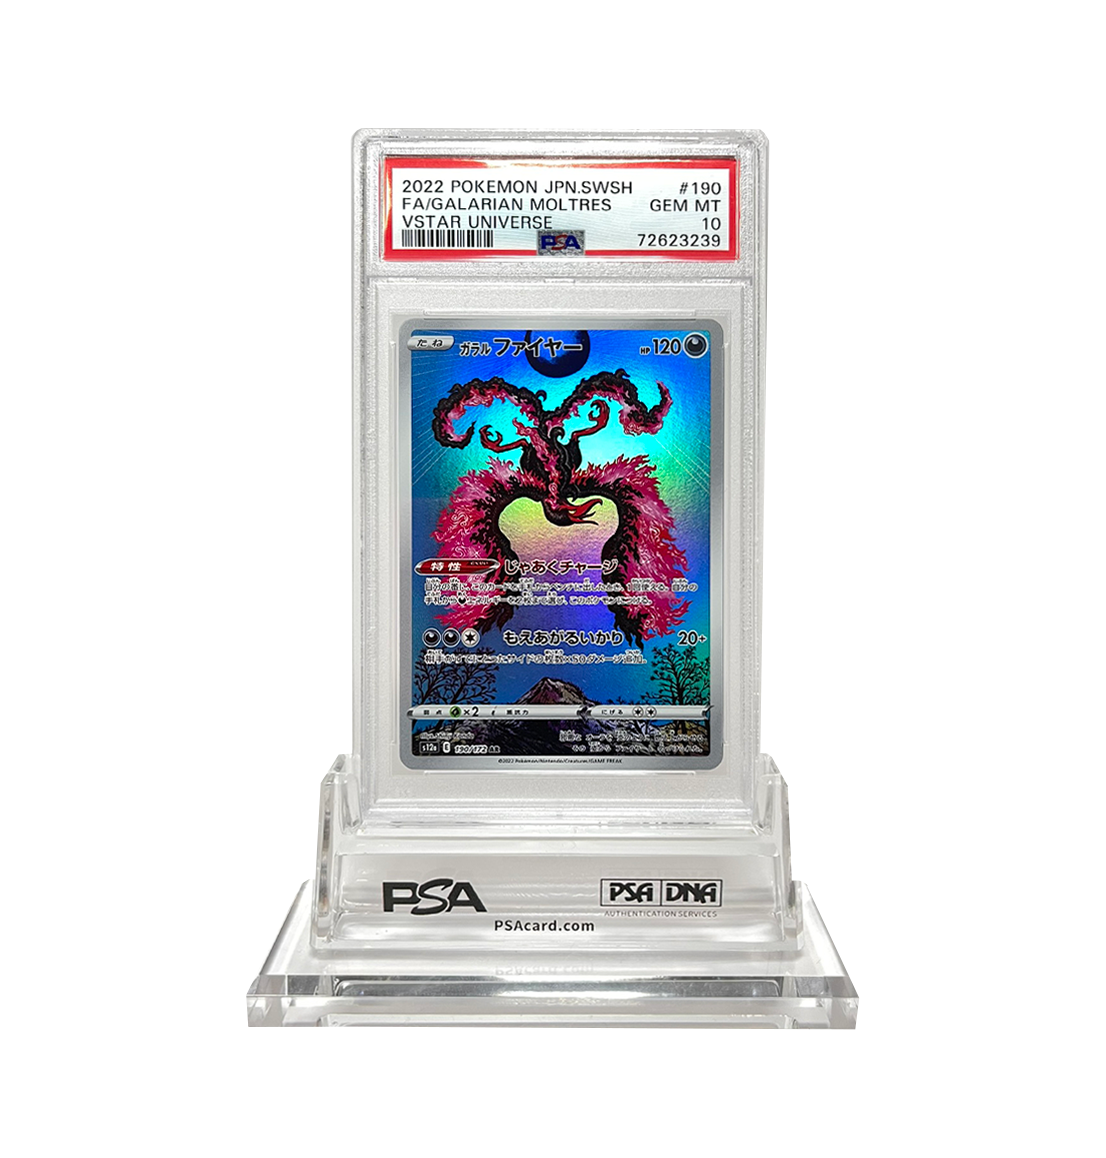 PSA 10 Galarian Moltres 190 Vstar Universe Japanese Pokemon card